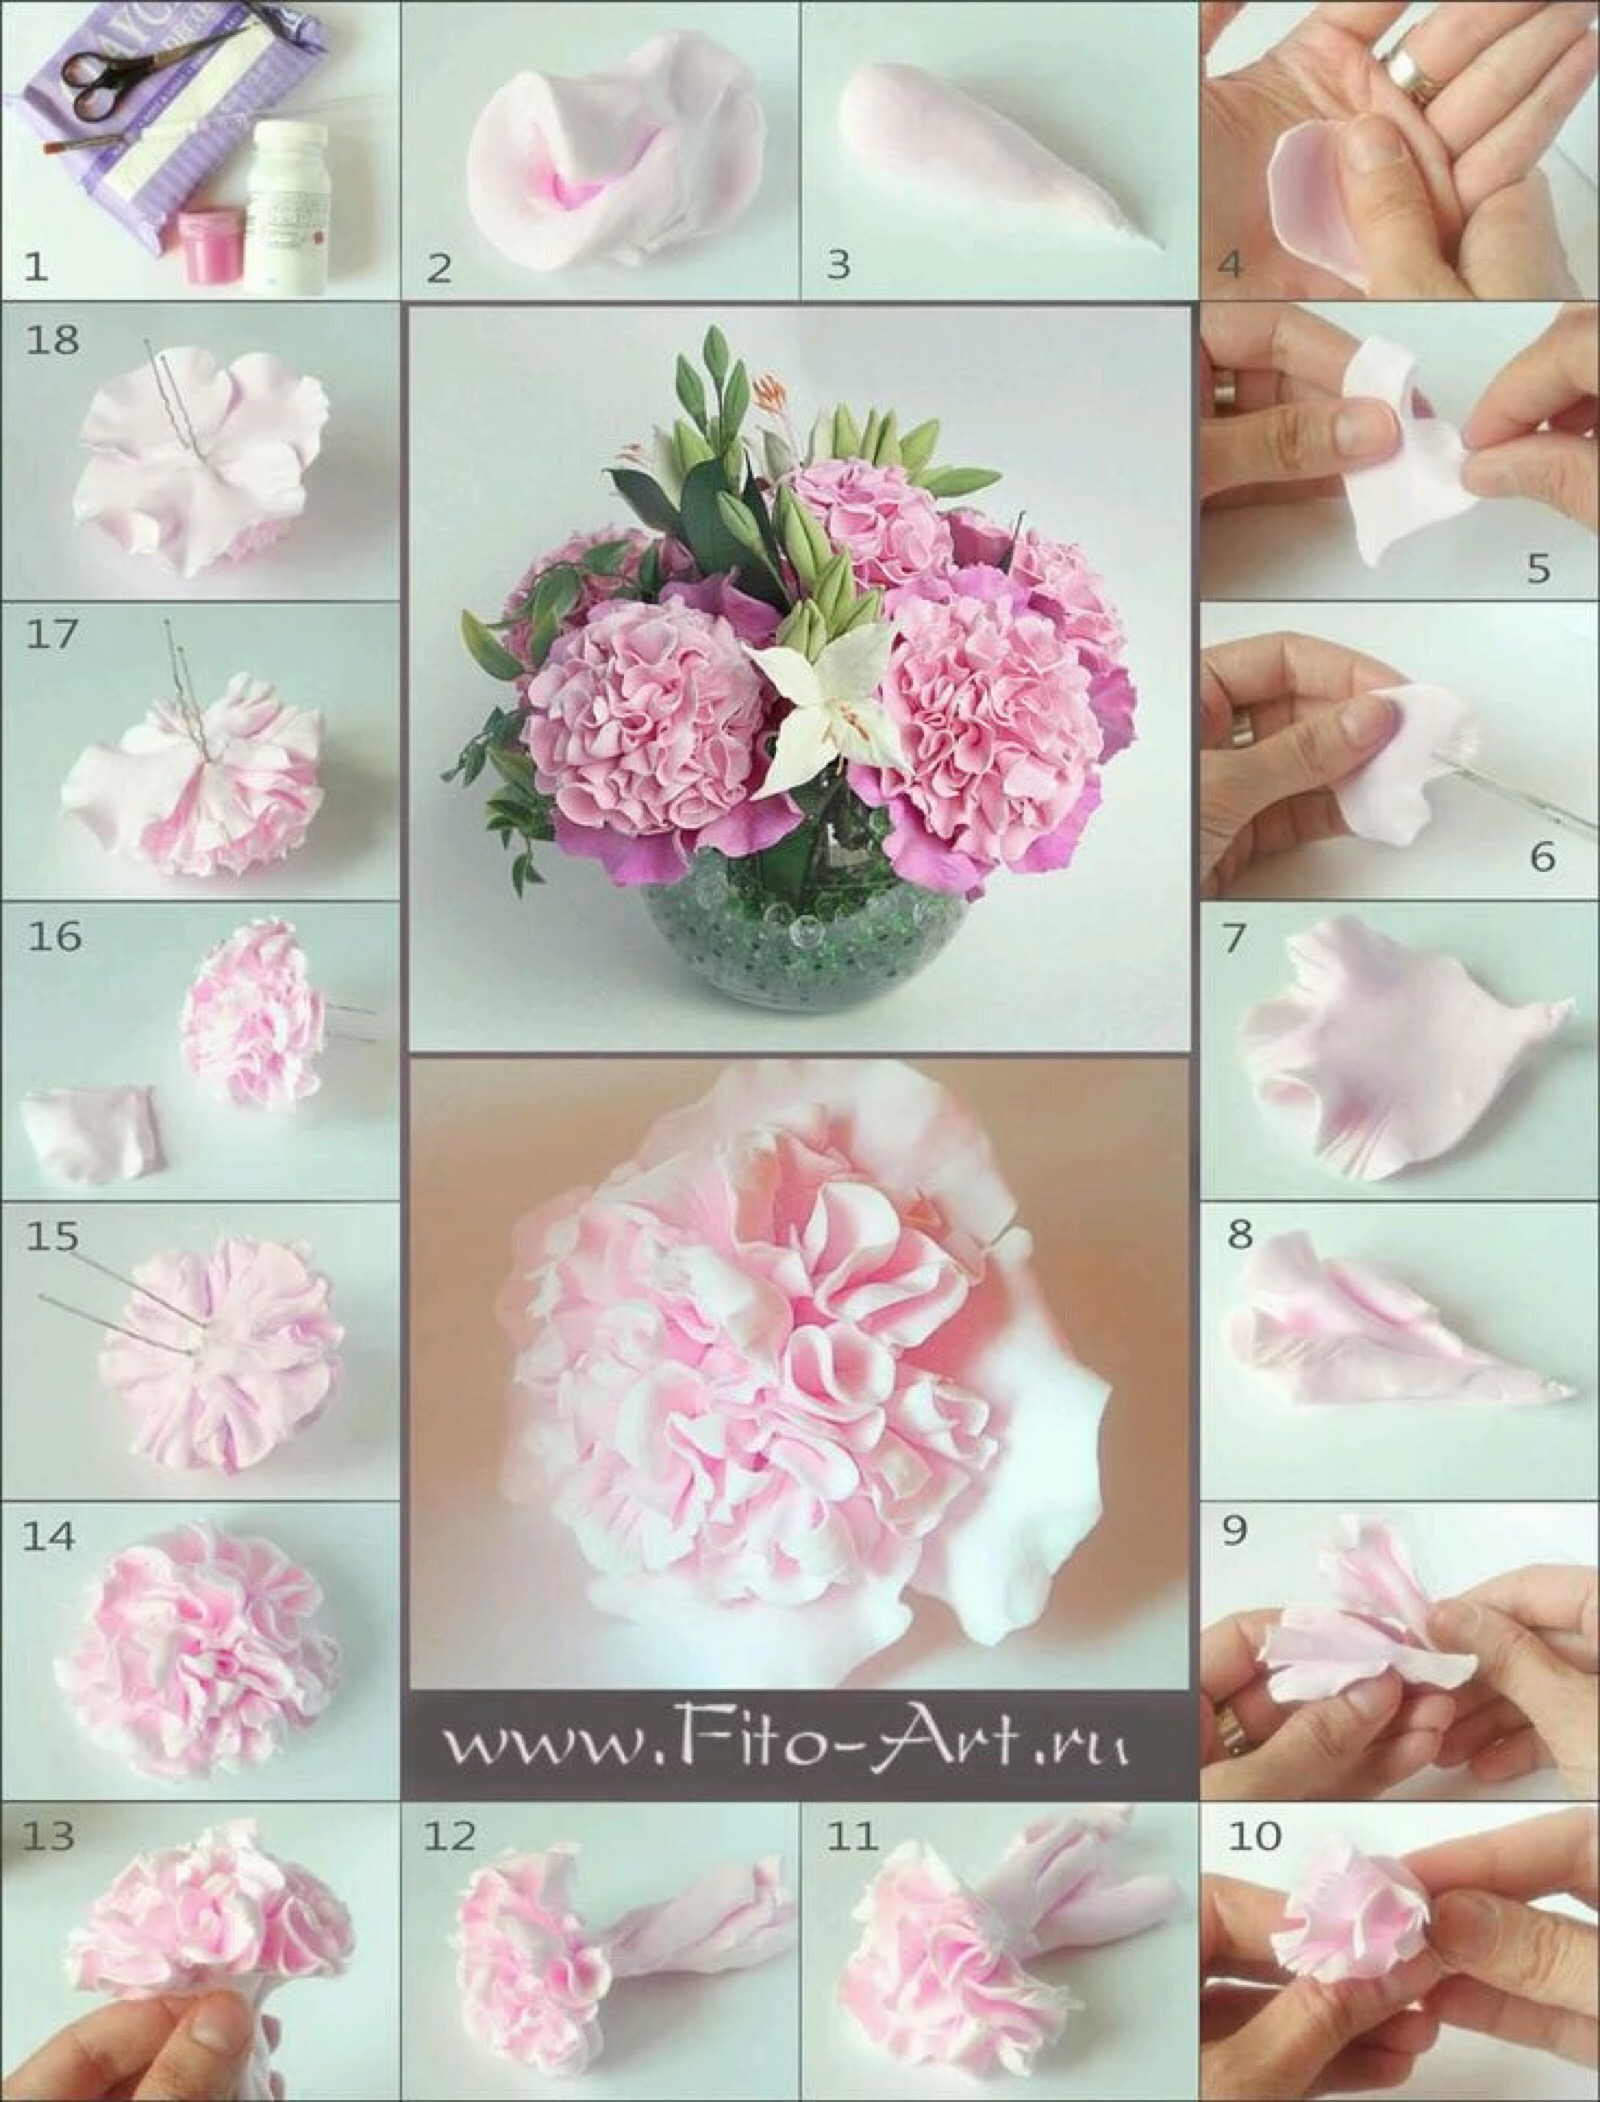 粘土做花的最简单方法图片